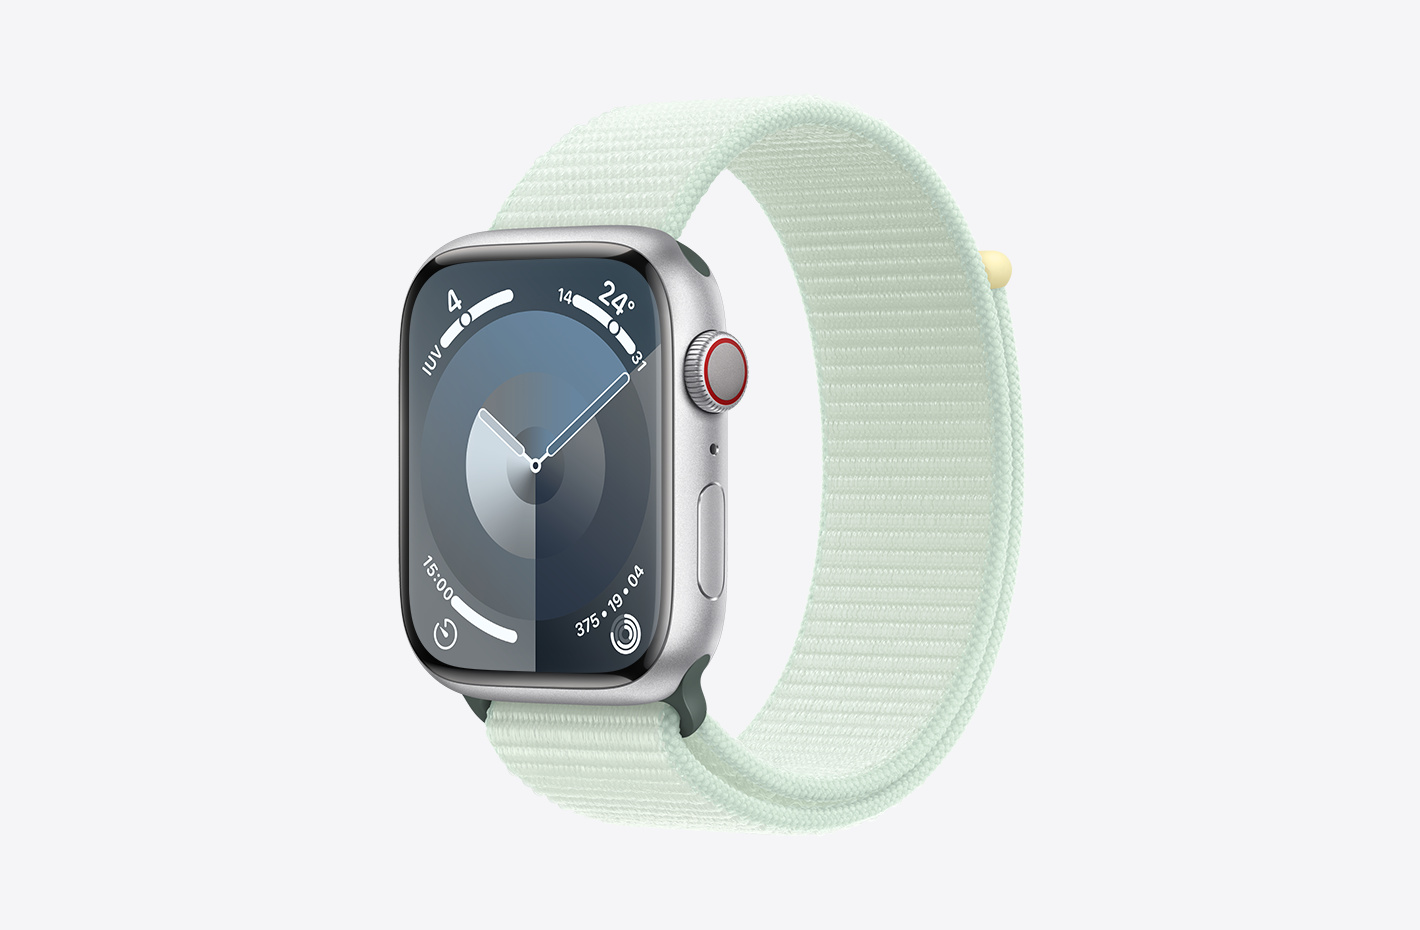 Imagen en ángulo de un Apple Watch con caja de aluminio color plata con acabado mate y correa loop deportiva color menta claro (verde), con cierre adhesivo ajustable y tejido de nylon de doble capa